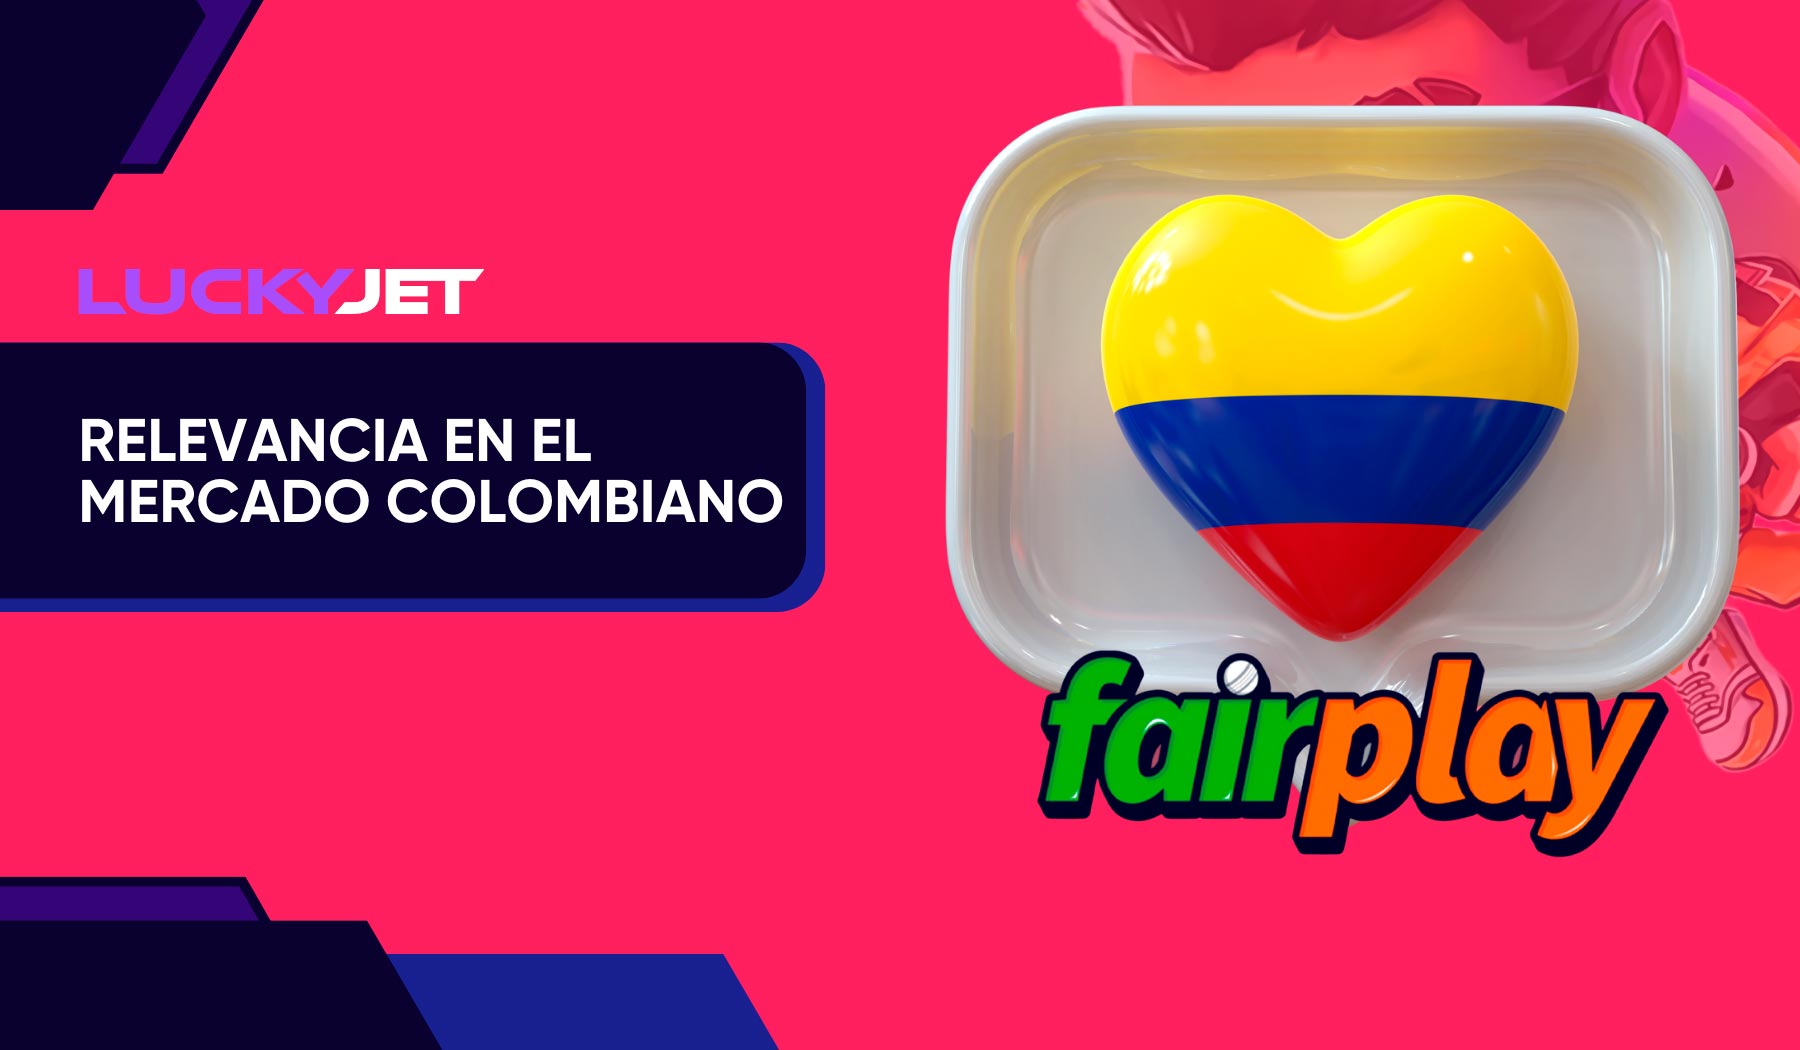 Fairplay Jet Parimatch en el mercado colombiano